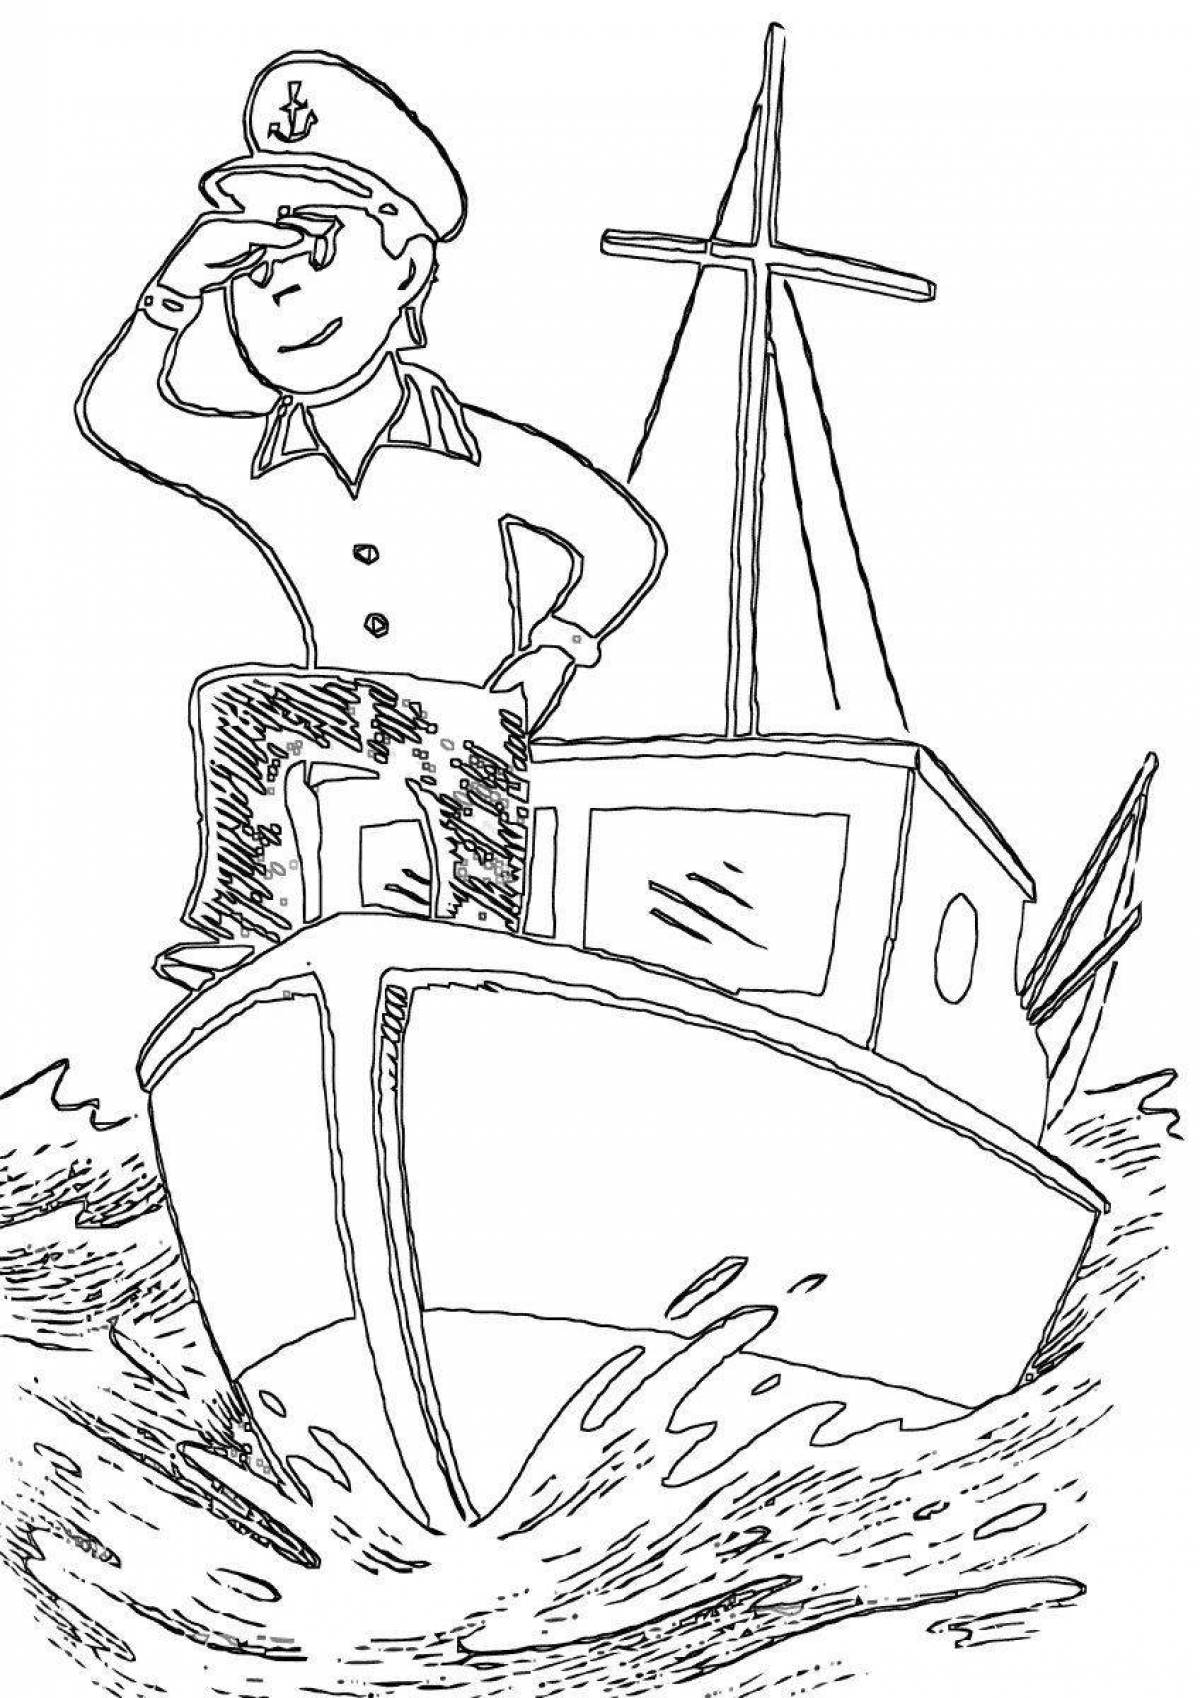 Моряк-раскраска colorful-sailor-story для детей